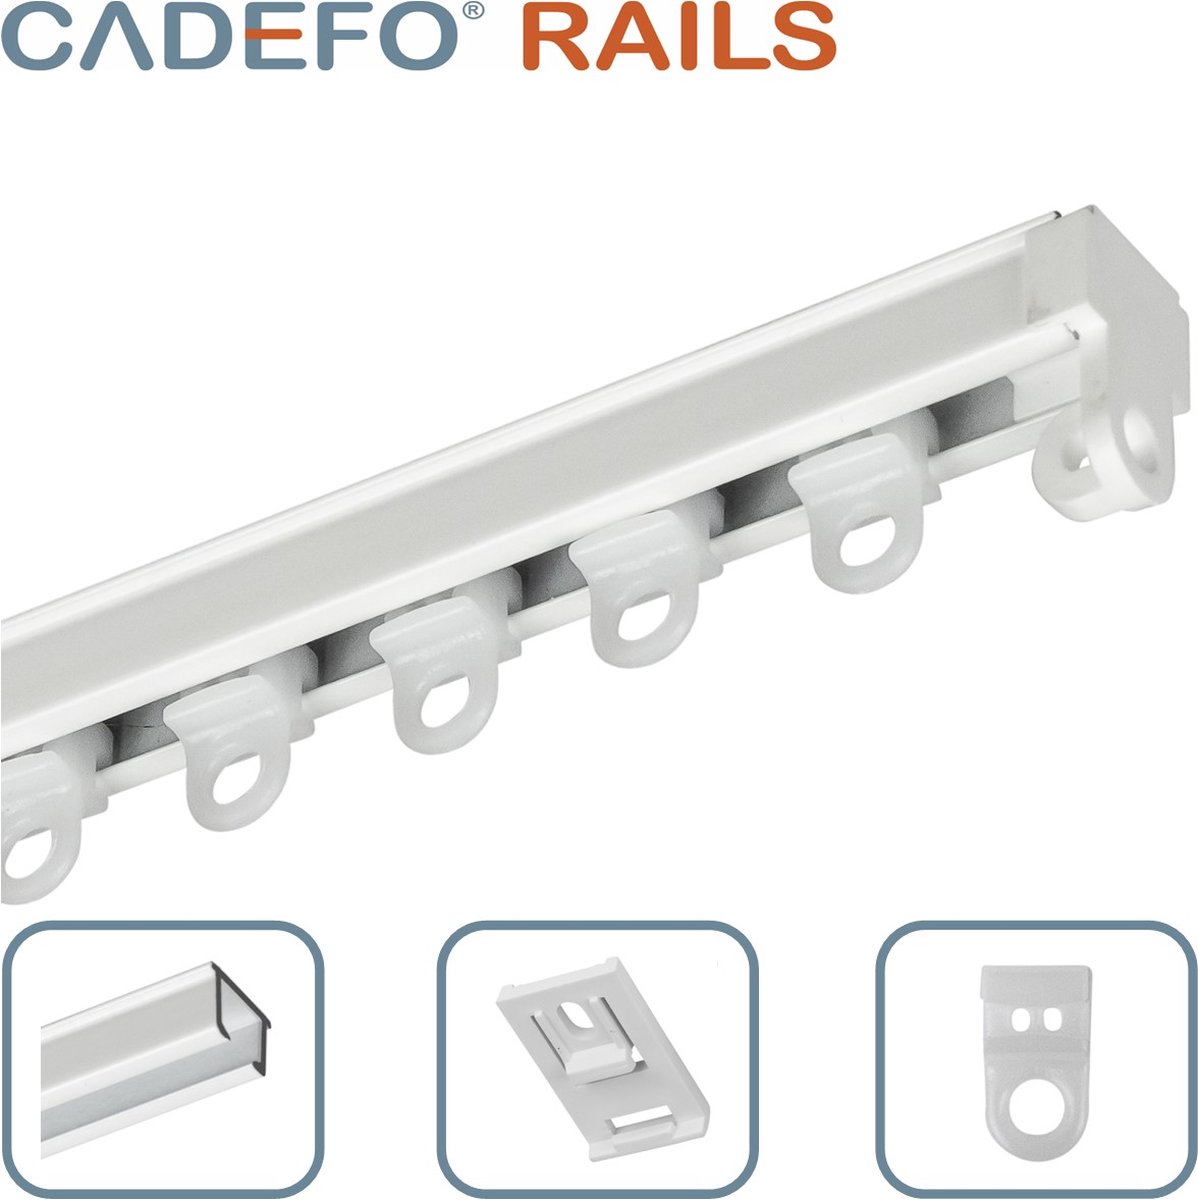 CADEFO RAILS (201 - 250 cm) Gordijnrails - Compleet op maat! - UIT 1 STUK - Leverbaar tot 6 meter - Plafondbevestiging - Lengte 229 cm